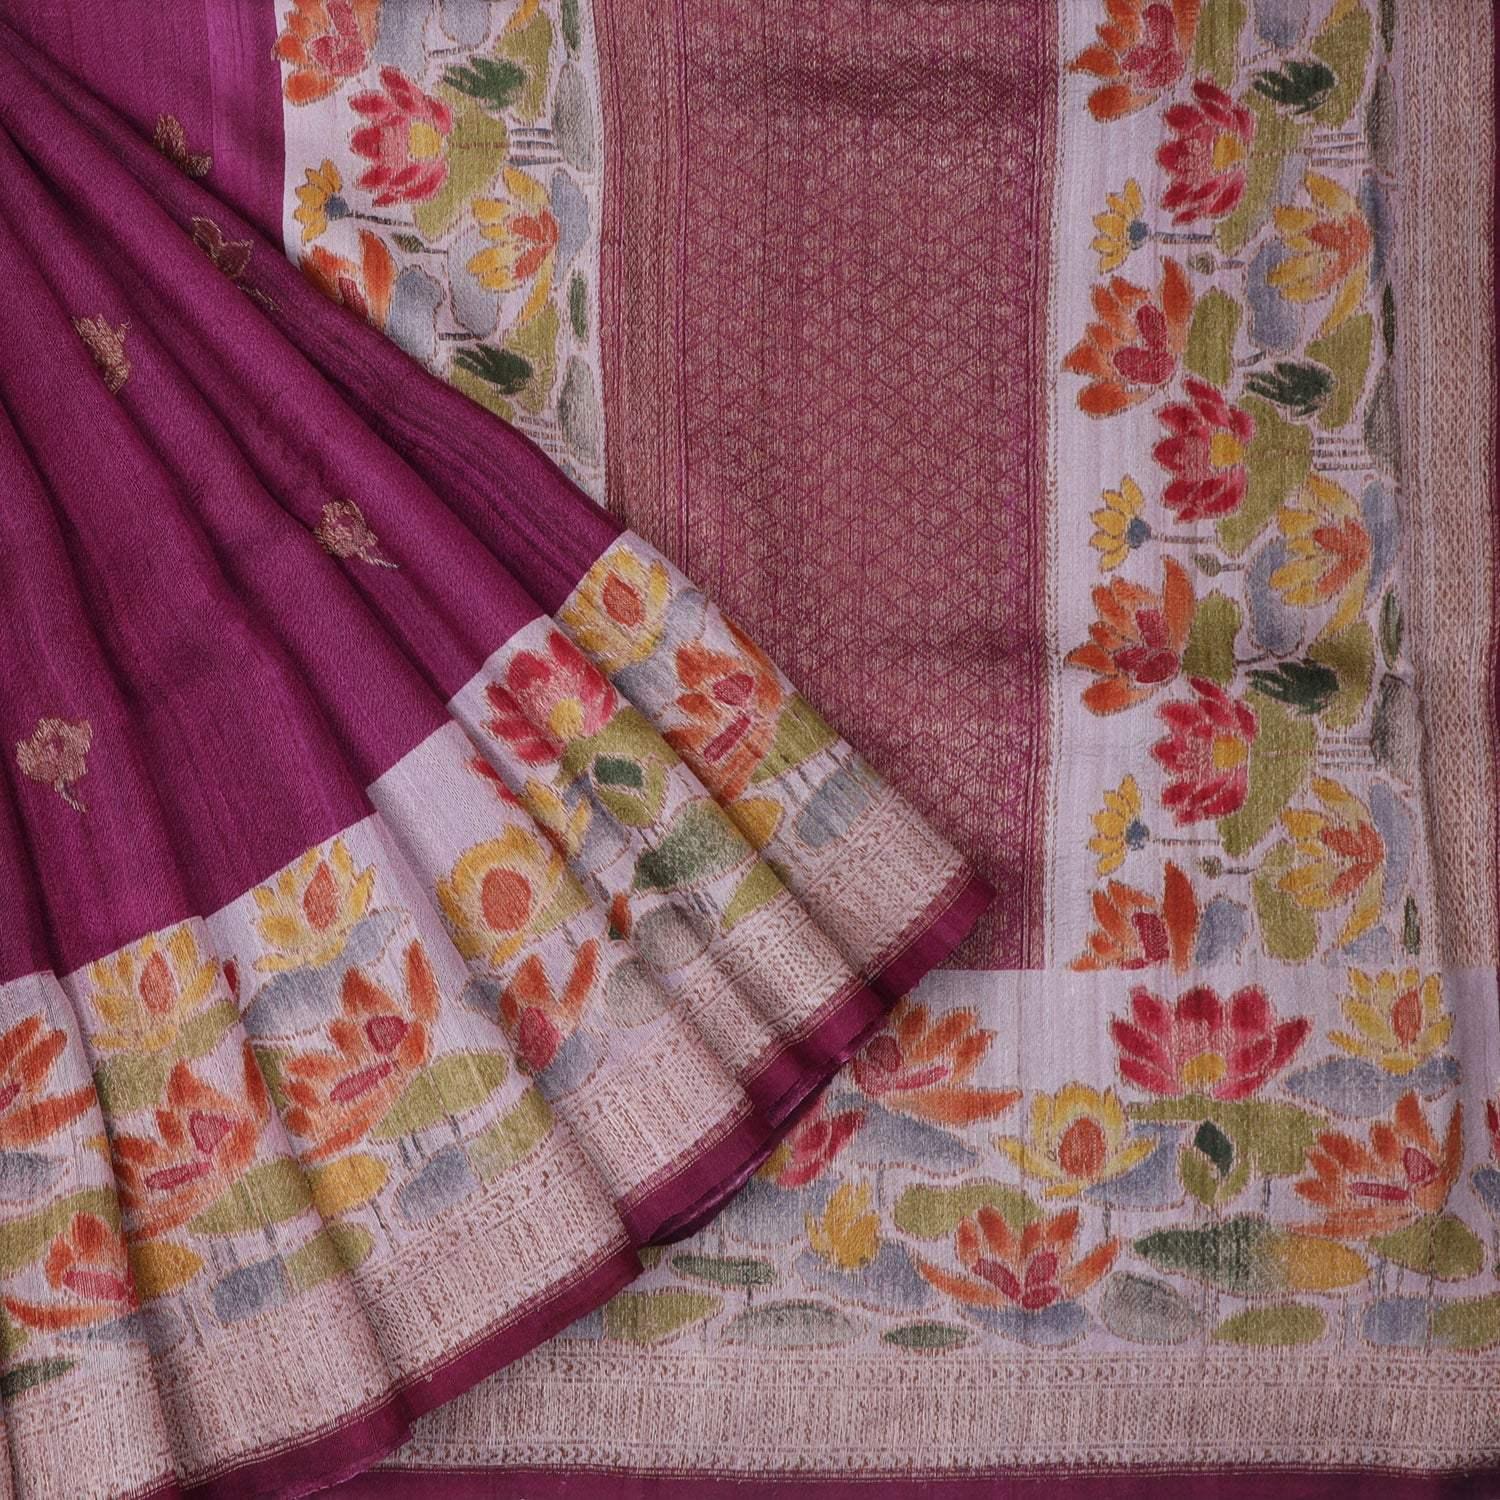 magenta-pink-tussar-banarasi-silk-handloom-saree-with-floral-motifs